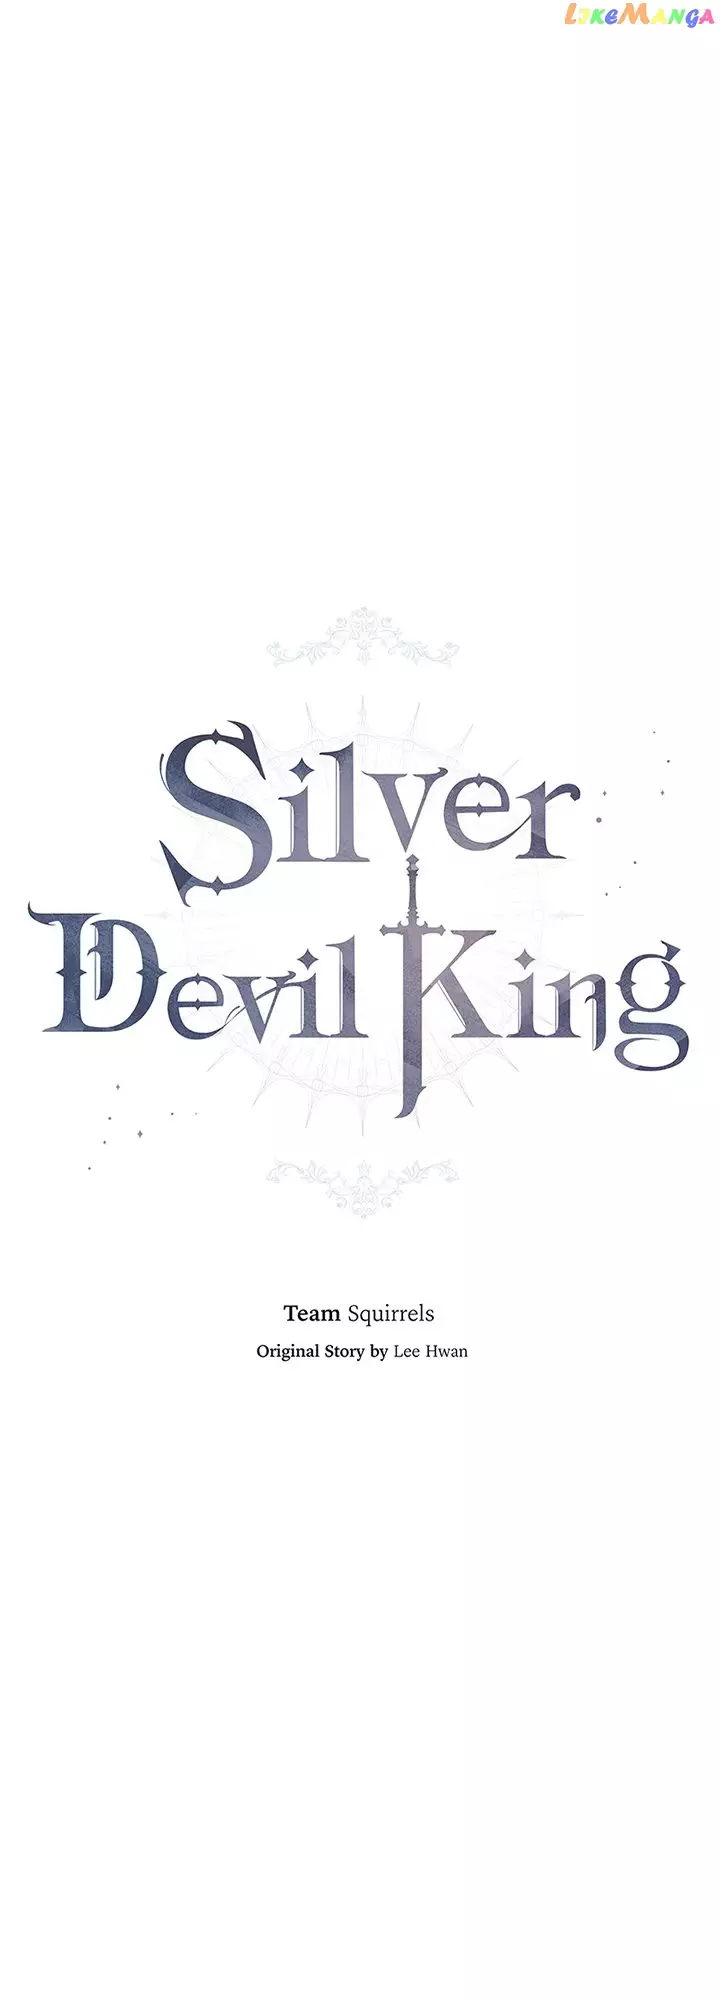 Silver Demon King - 99 page 45-0062775b